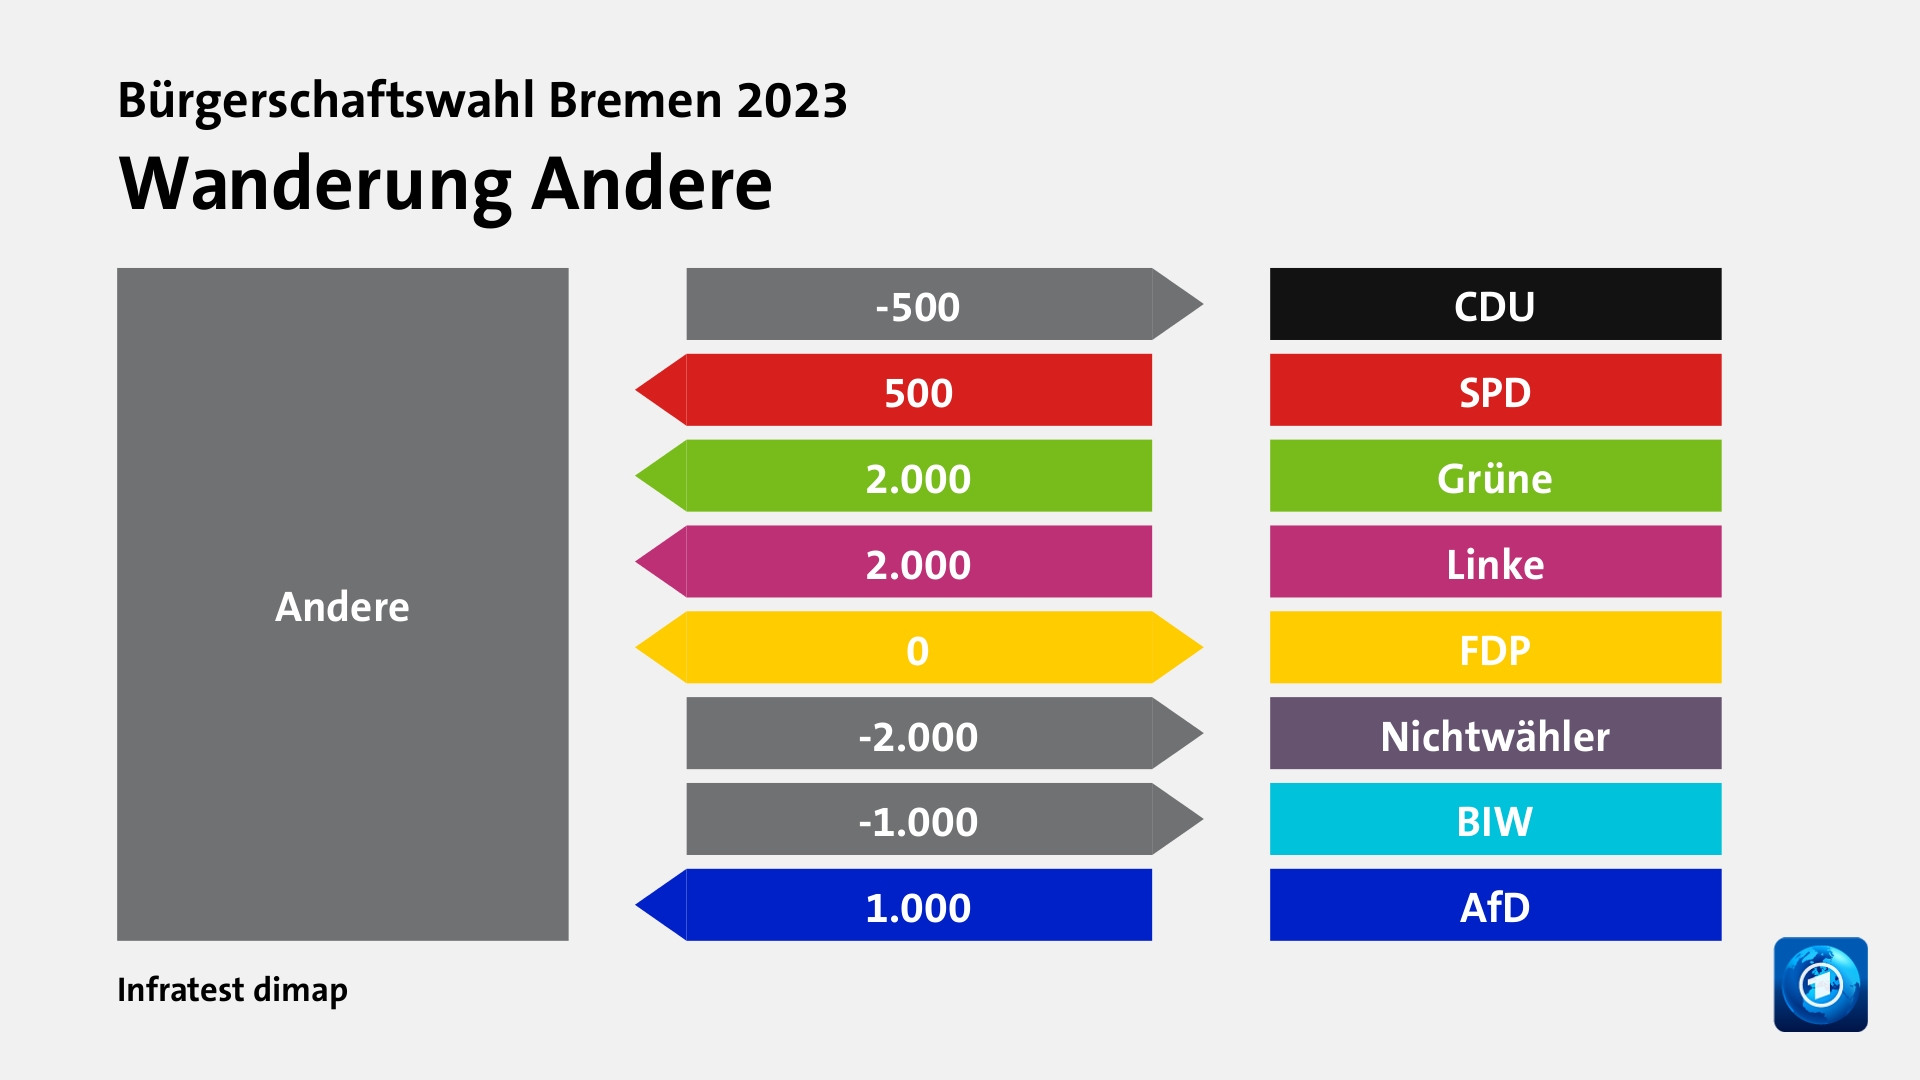 Wanderung Anderezu CDU 500 Wähler, von SPD 500 Wähler, von Grüne 2.000 Wähler, von Linke 2.000 Wähler, zu FDP 0 Wähler, zu Nichtwähler 2.000 Wähler, zu BIW 1.000 Wähler, von AfD 1.000 Wähler, Quelle: Infratest dimap